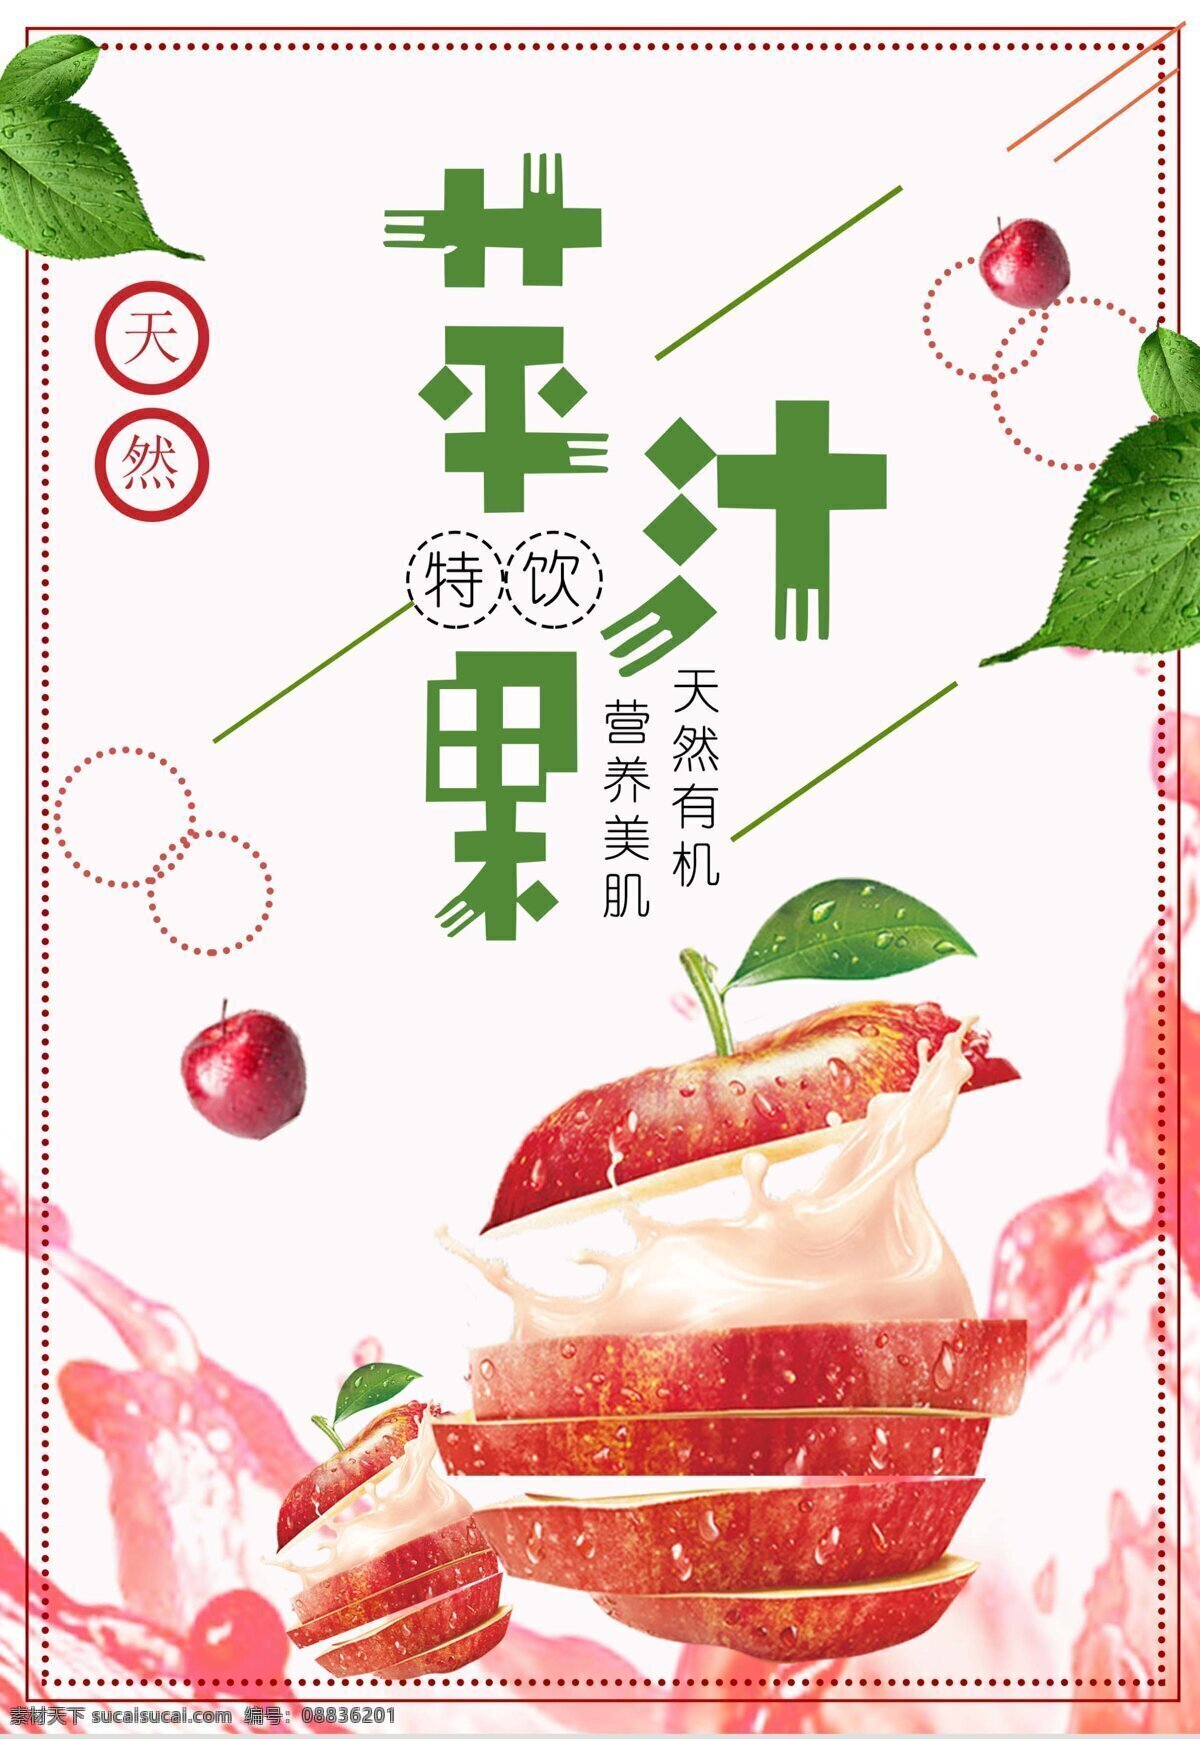 苹果汁海报 苹果海报 苹果 粉色 樱桃